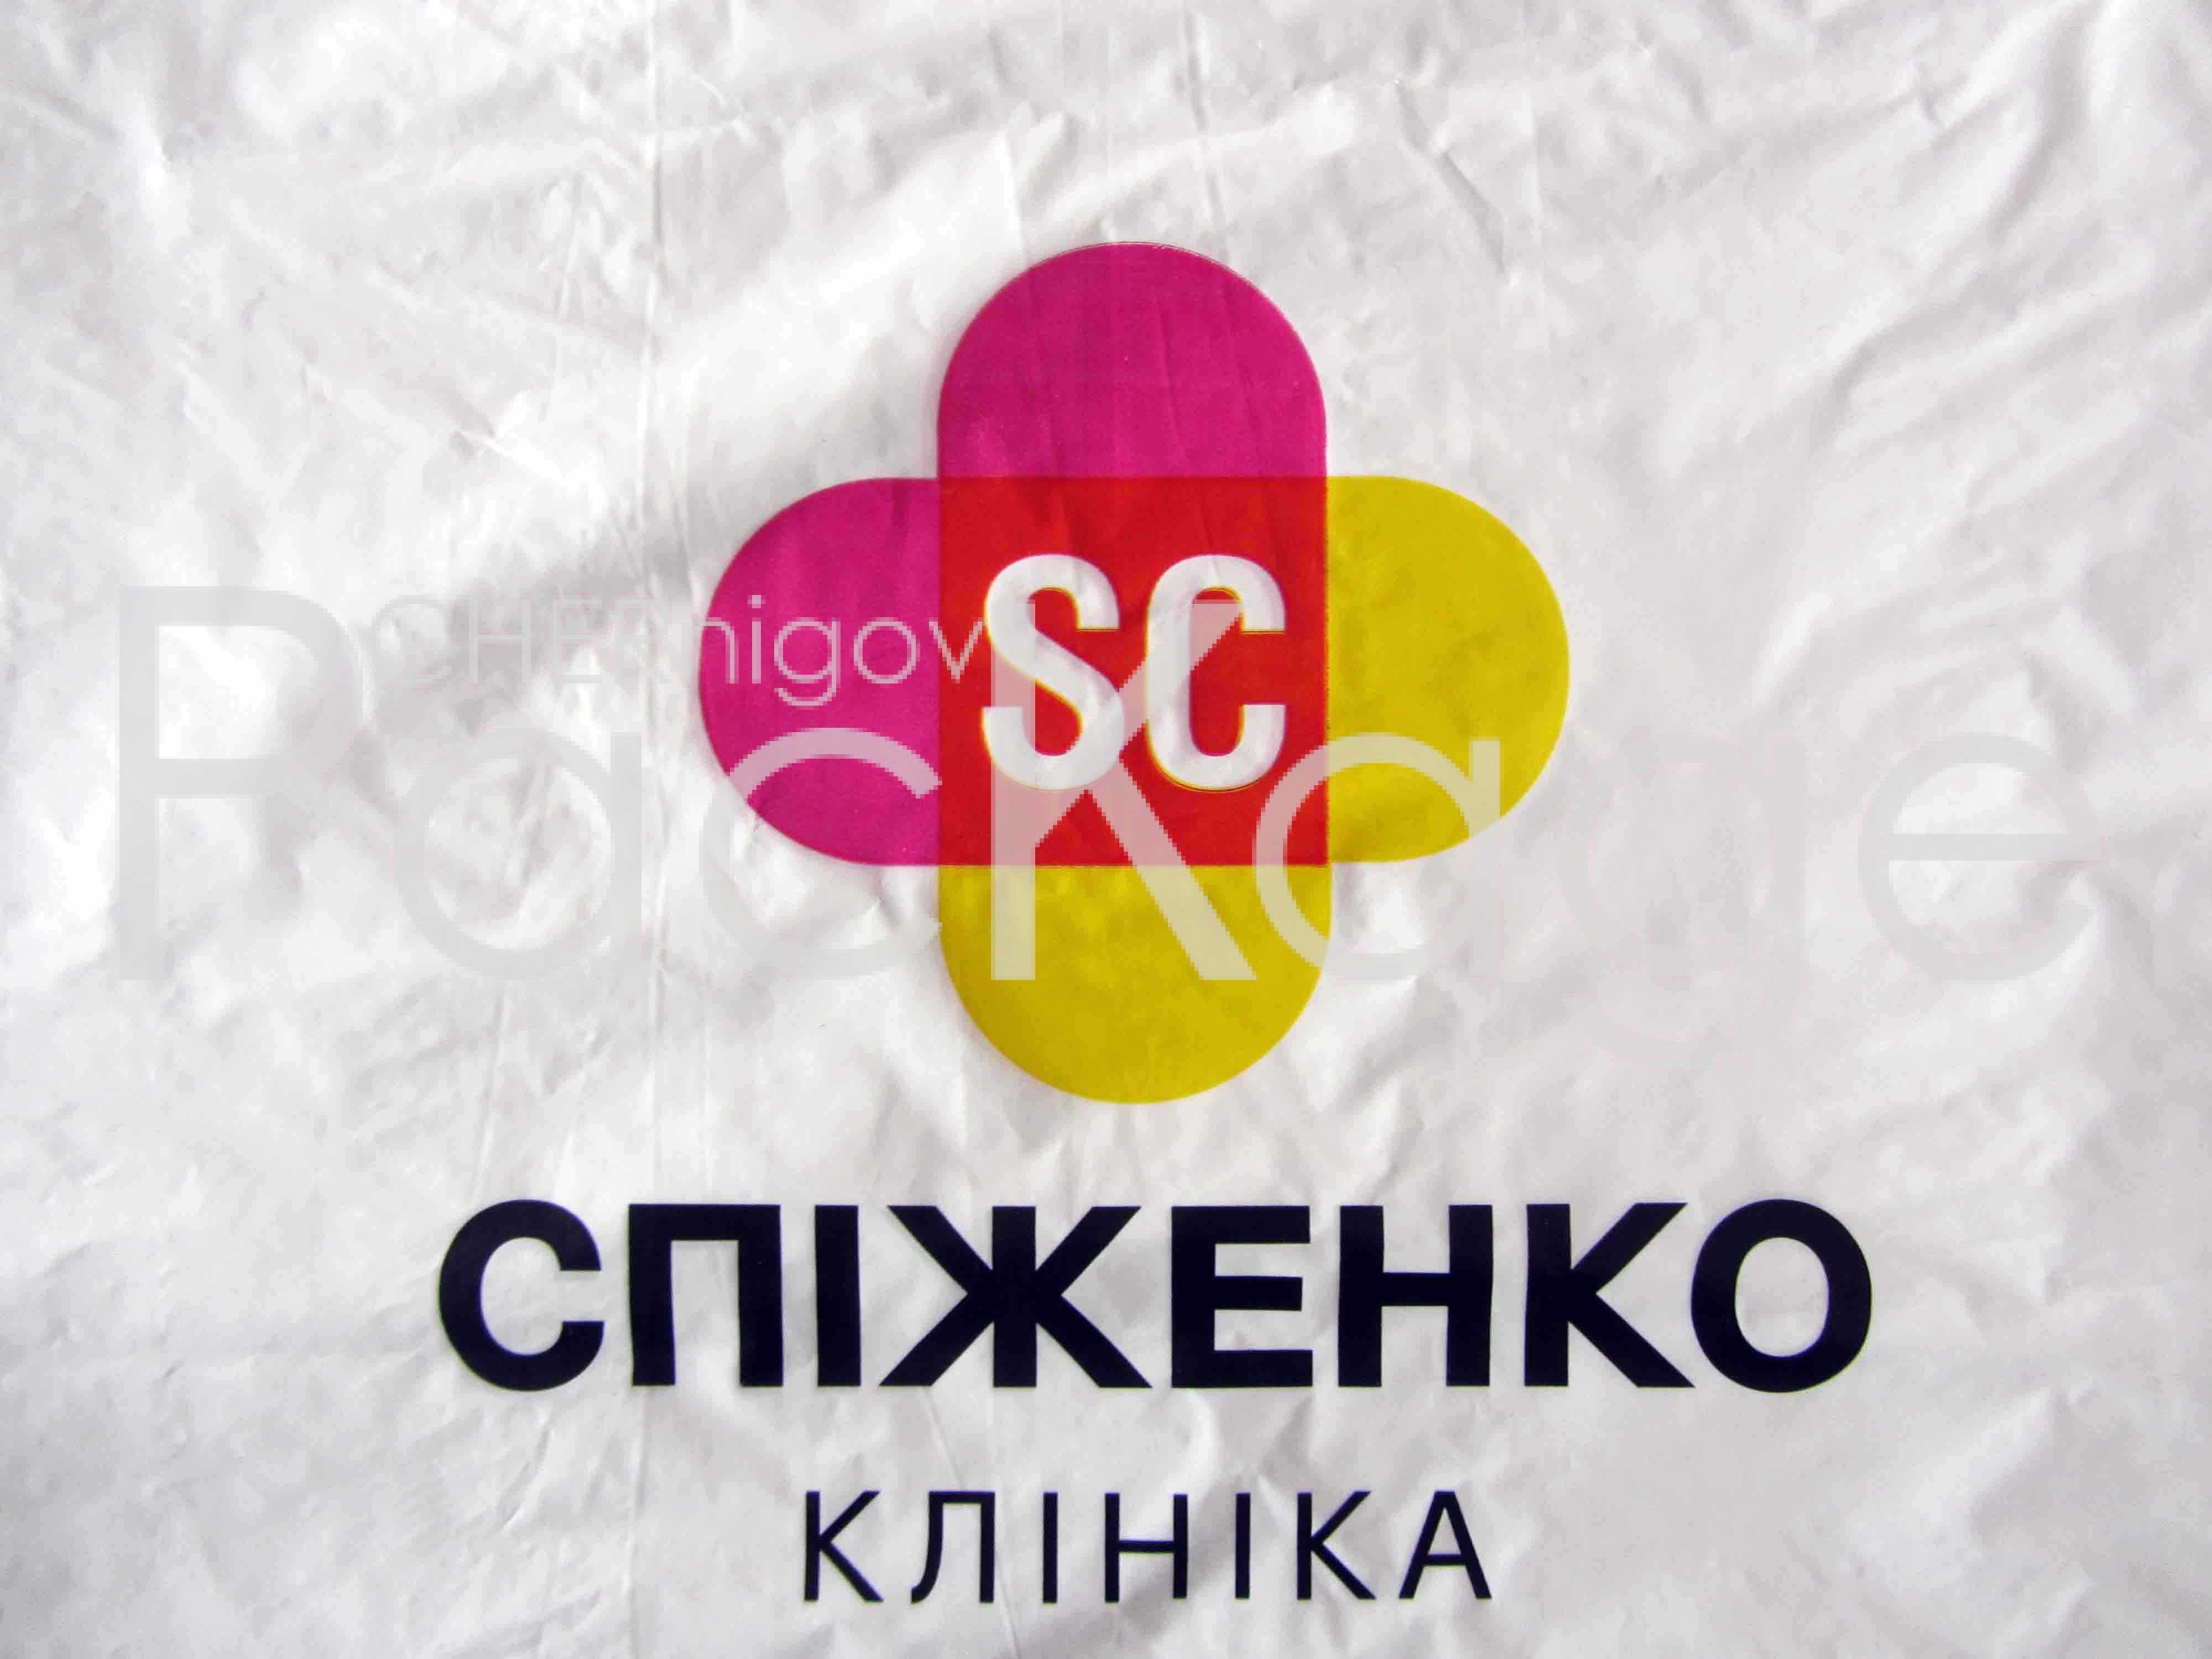 Друк на пакетах Chernigov Package - Photo IMG_6469